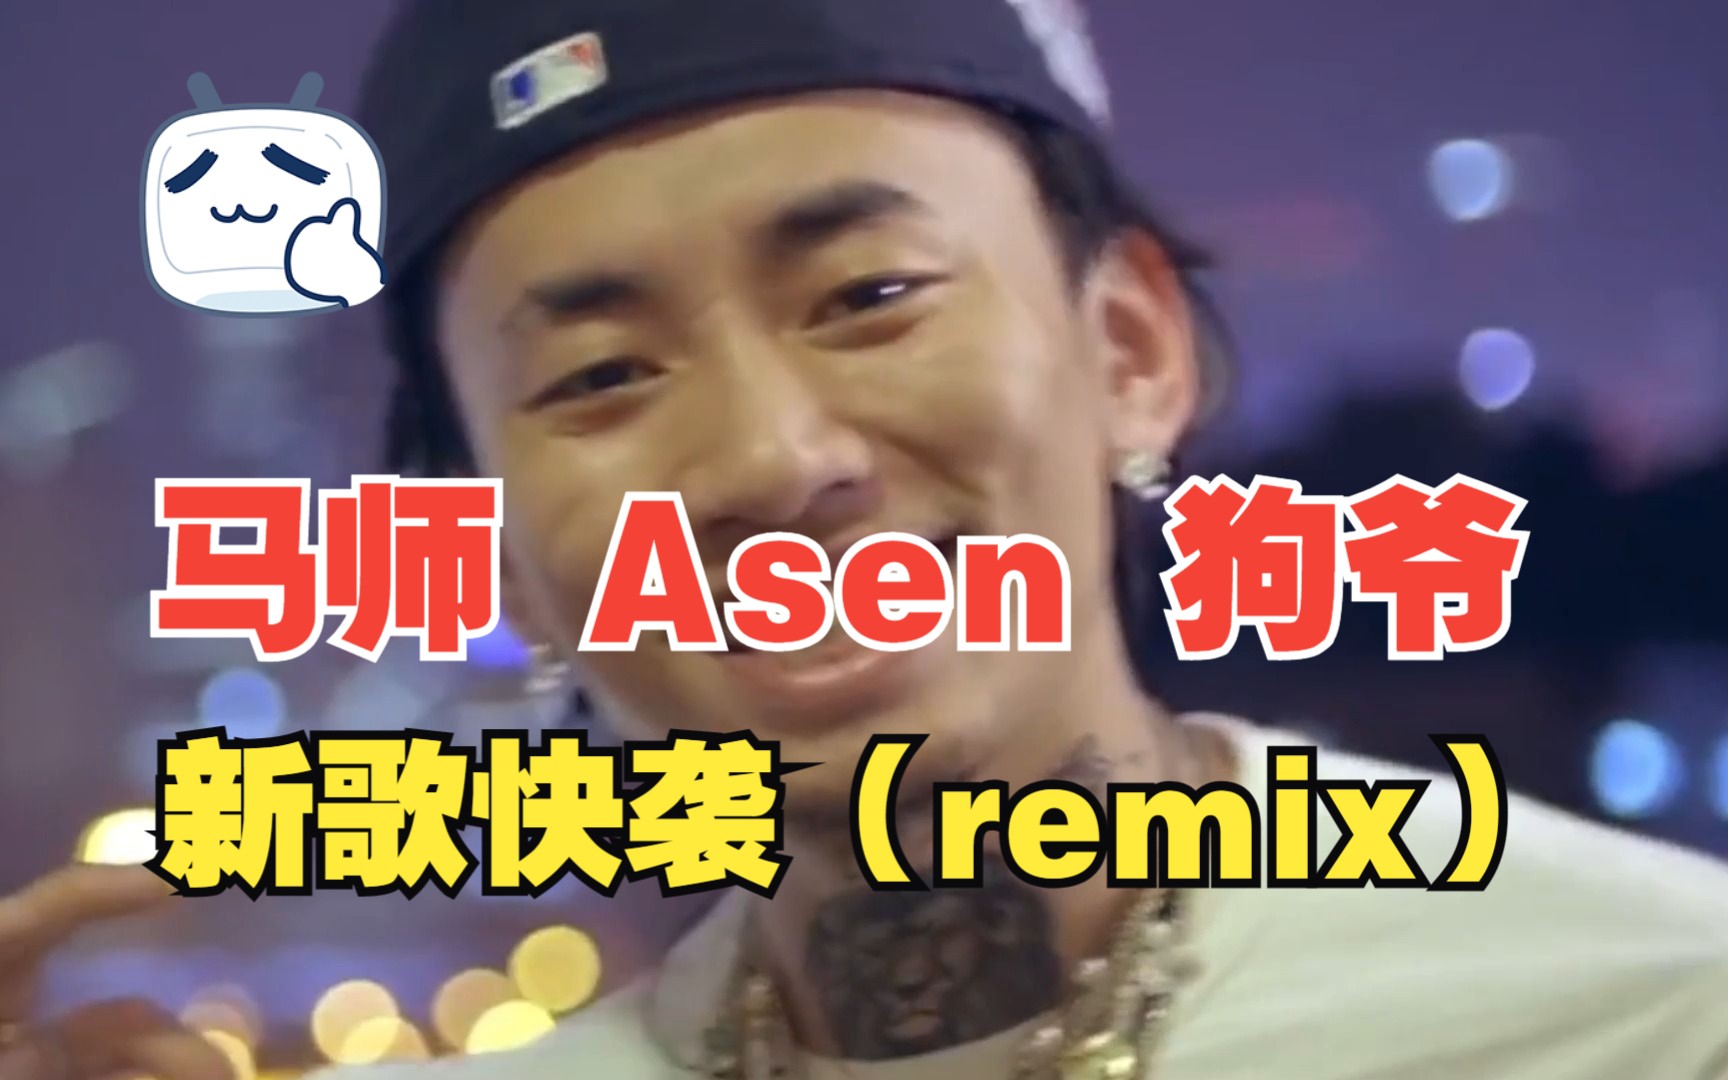 马师与Asen出新歌snoop dogg-back in the game(remix)Ft.马思唯，Asen,Ice Cube【Mix&MV by 胶泥长虫】